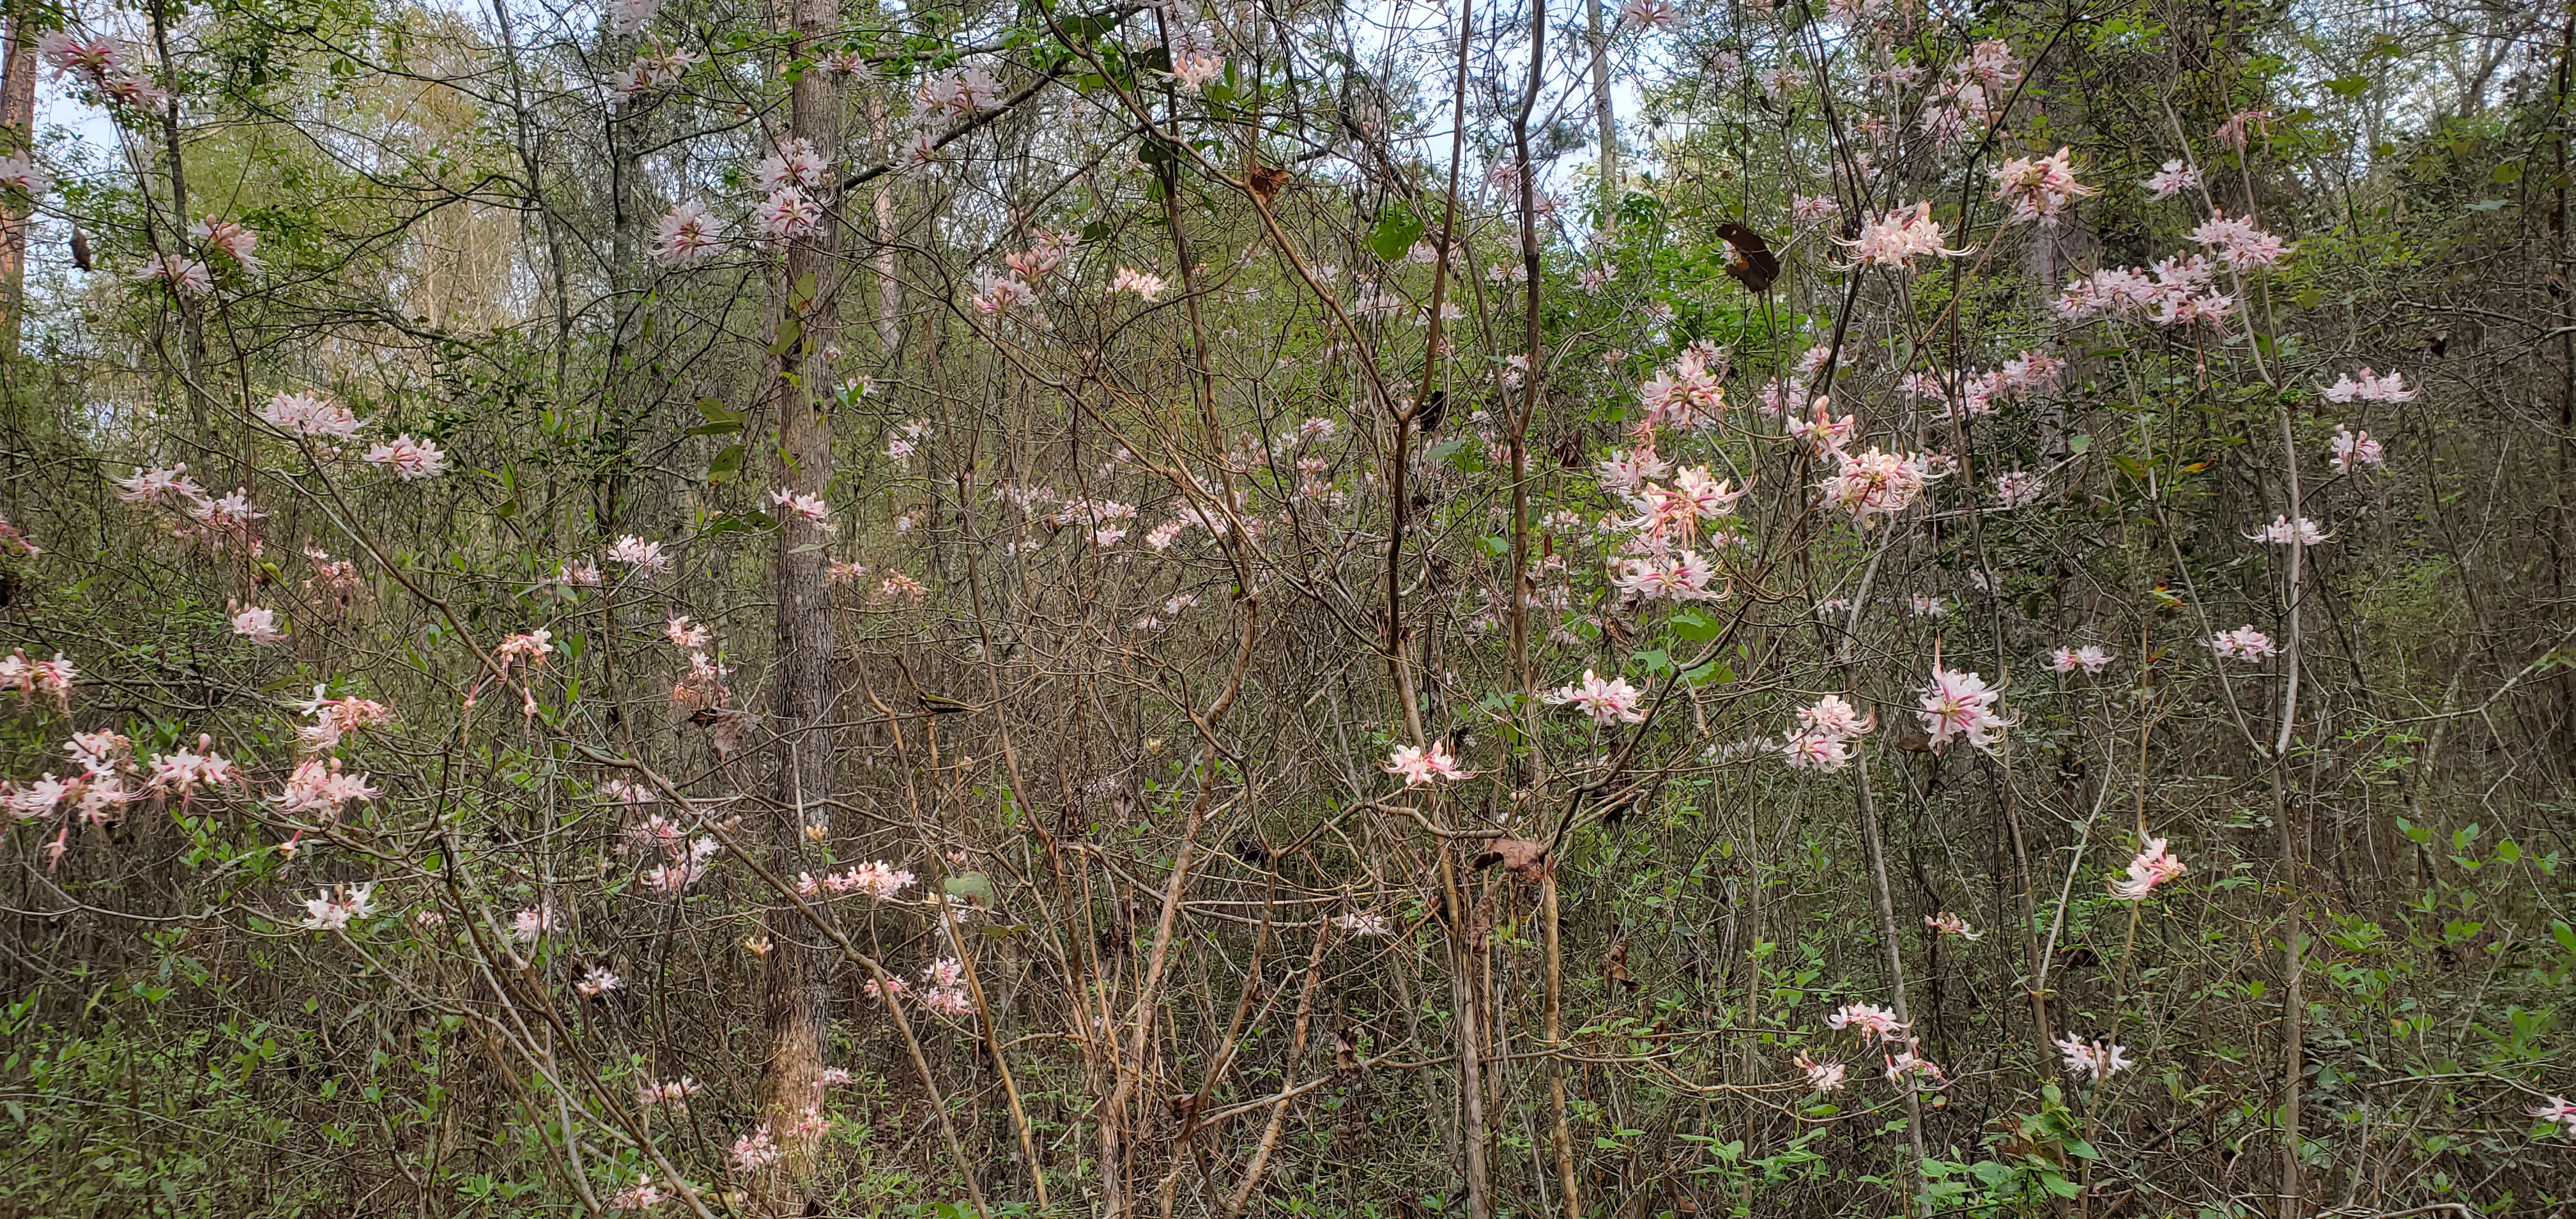 Many native wild azaleas